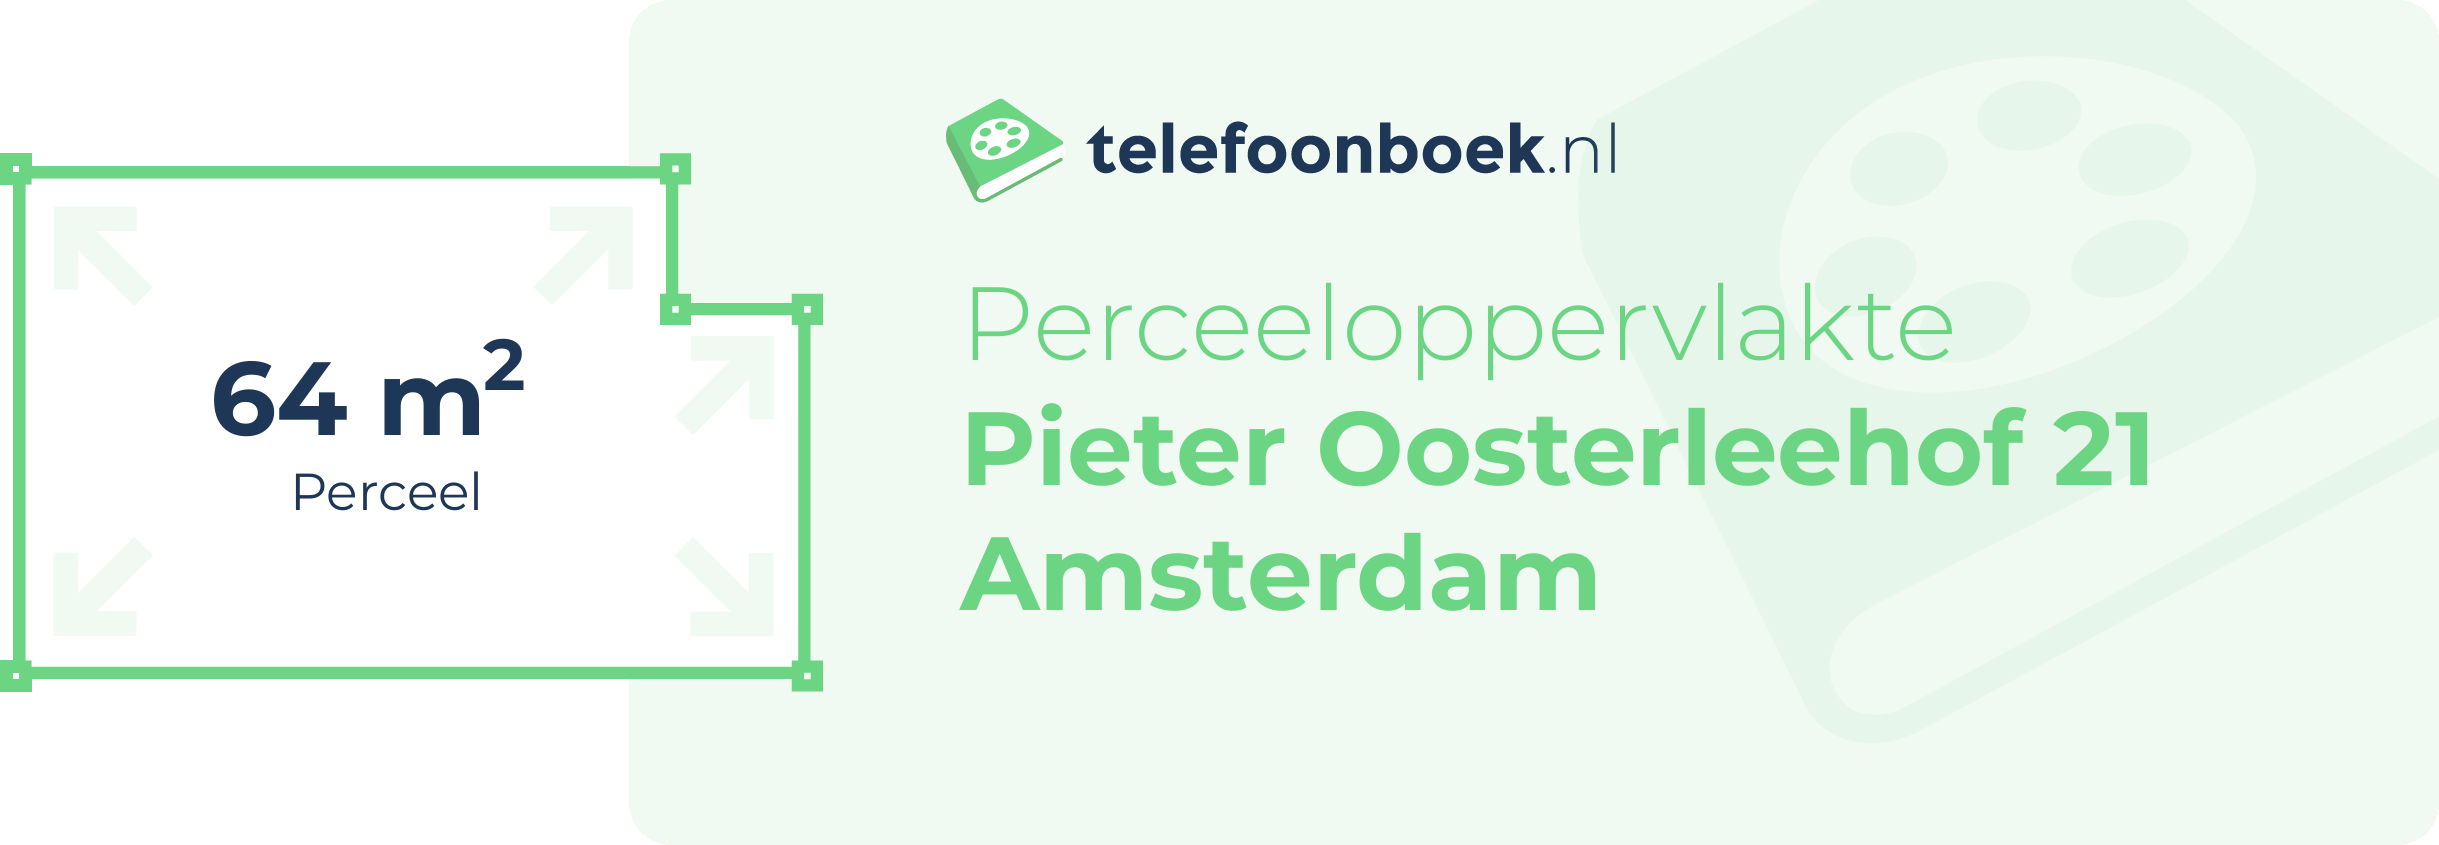 Perceeloppervlakte Pieter Oosterleehof 21 Amsterdam